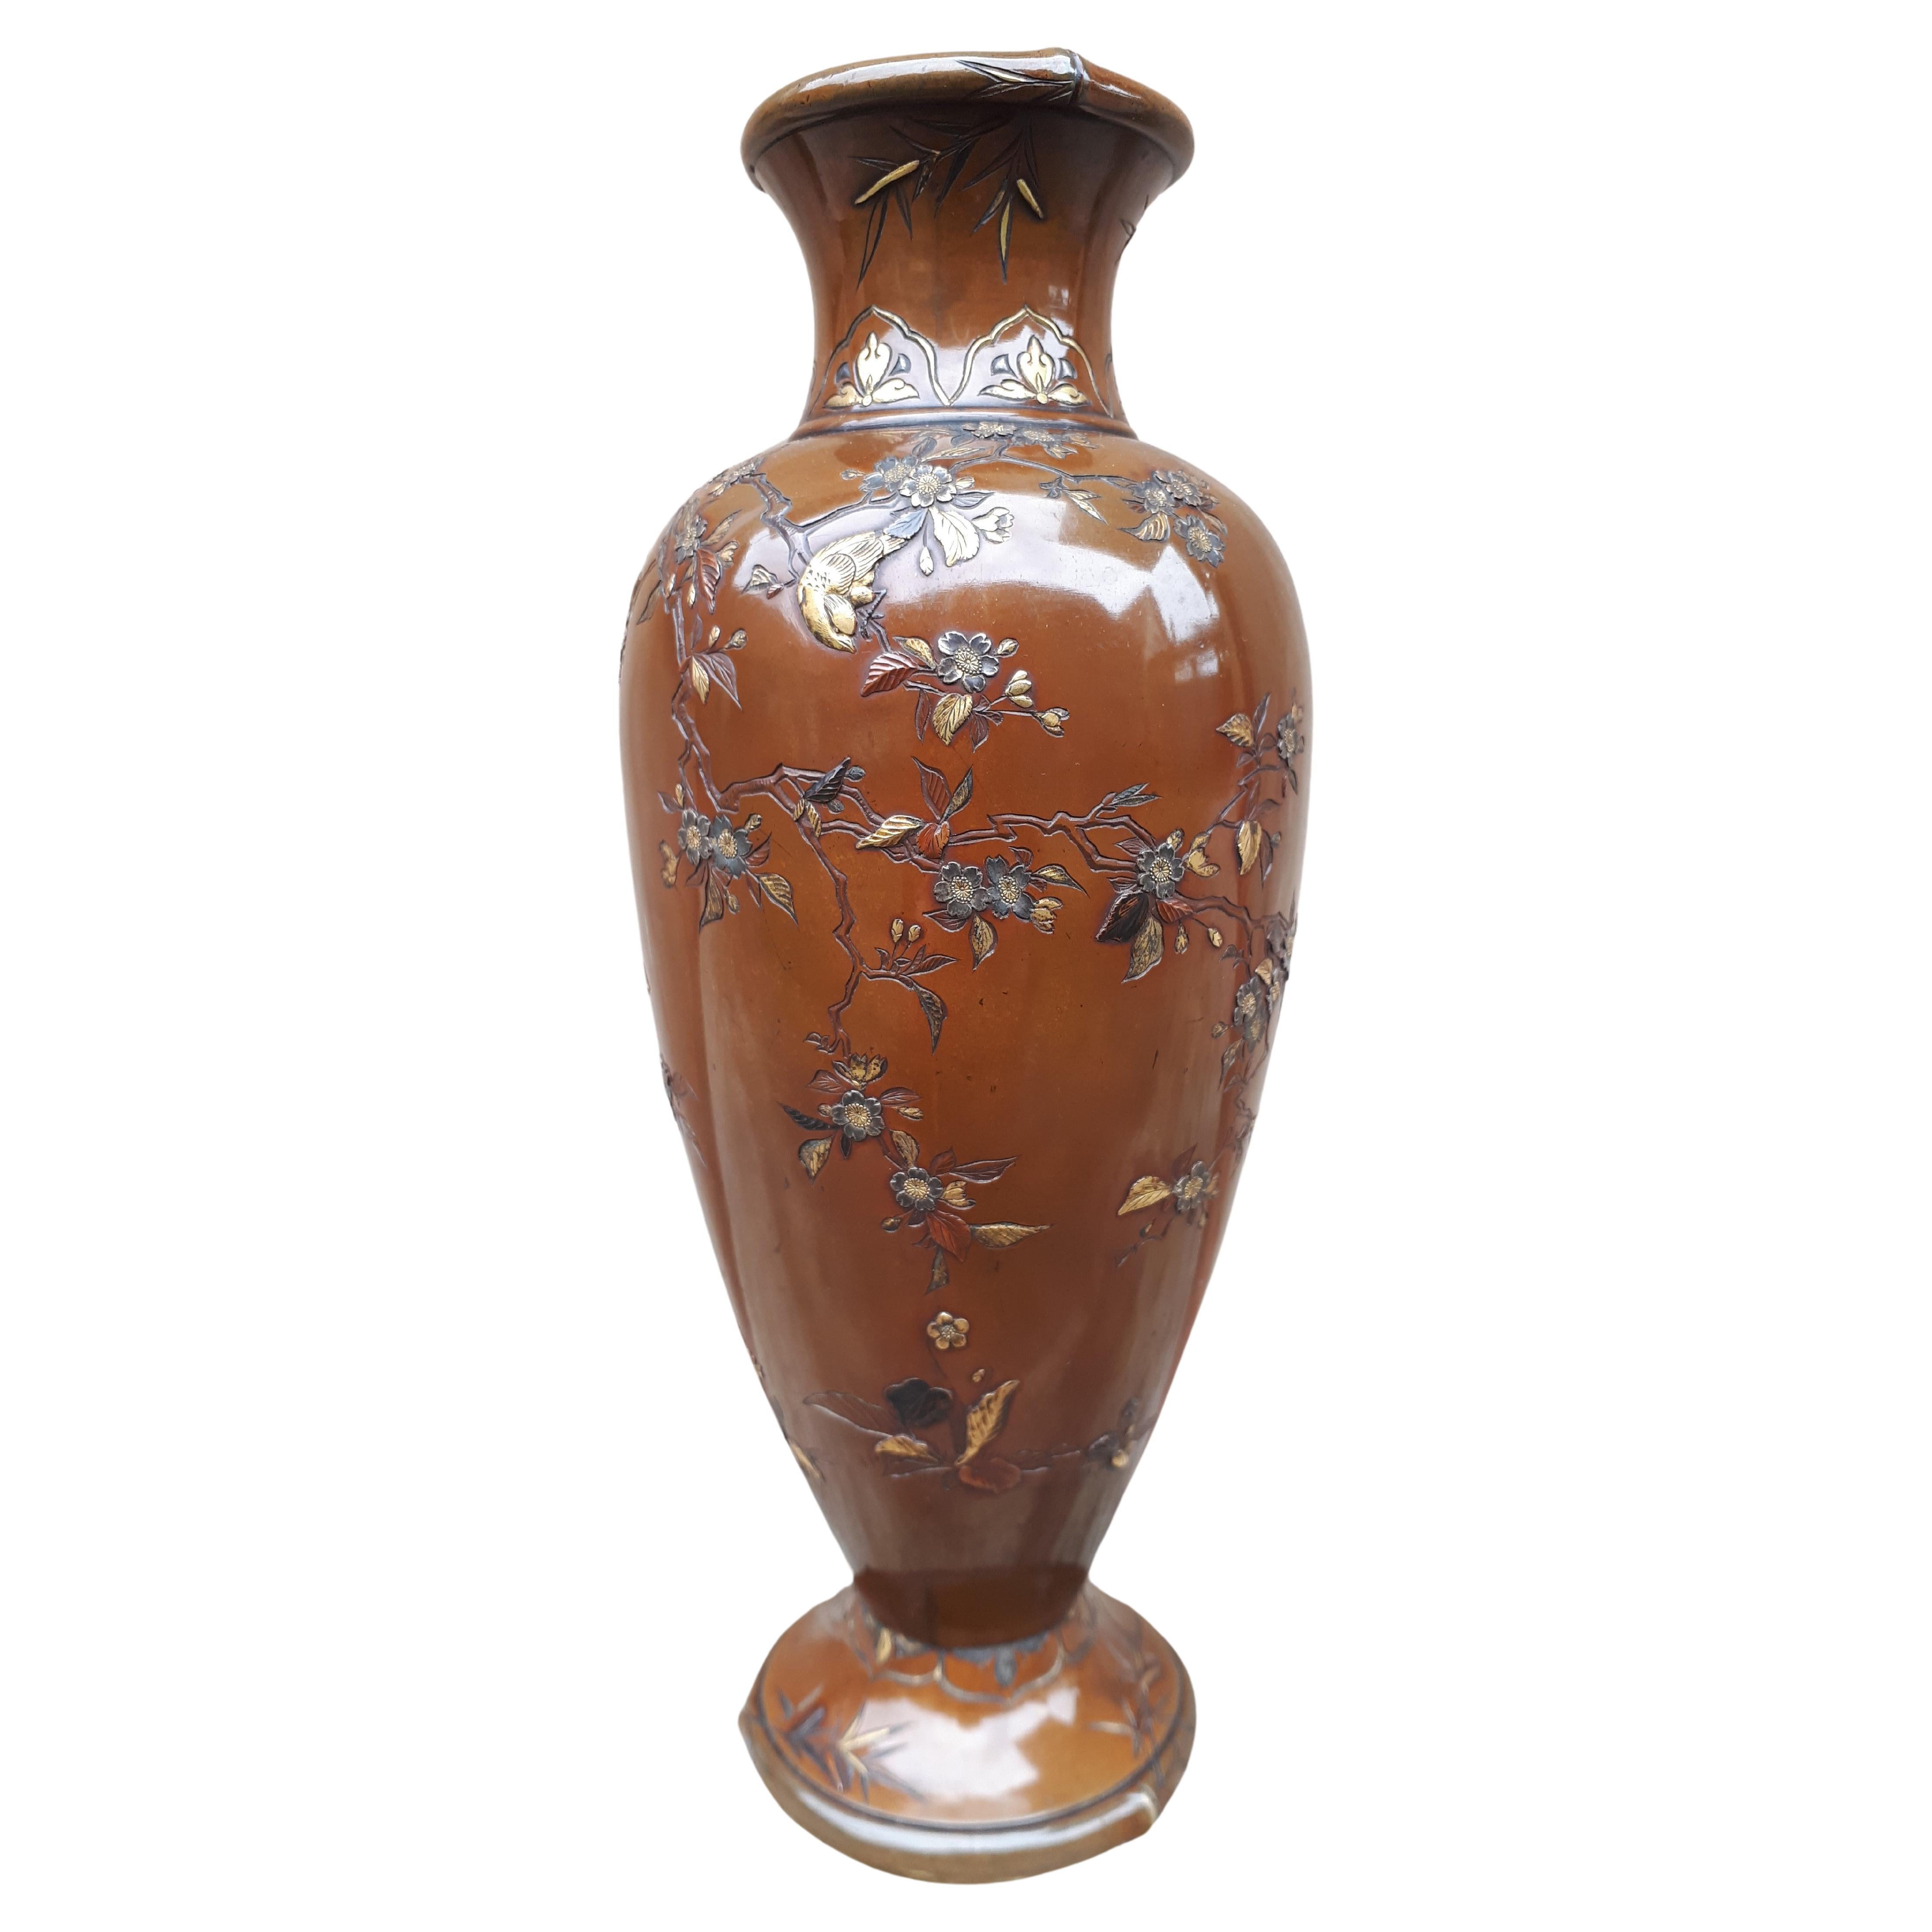 Vase japonais en bronze incrusté de métaux mélangés, signé Inoue